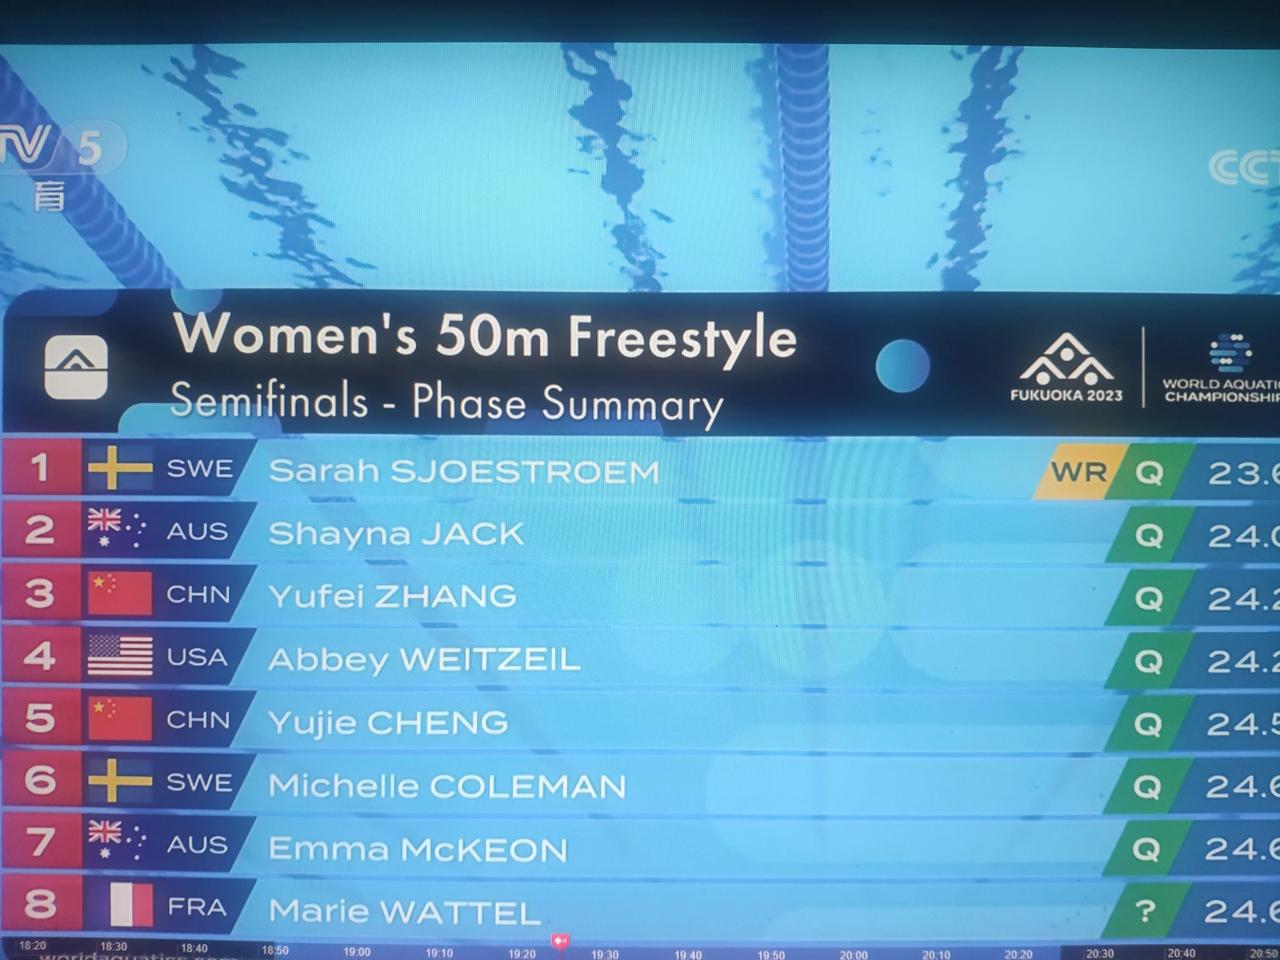 我算是见识到人生大喜了。刚才看福冈世锦赛，女子50米蝶泳决赛，舍斯特伦拿了冠军。(1)